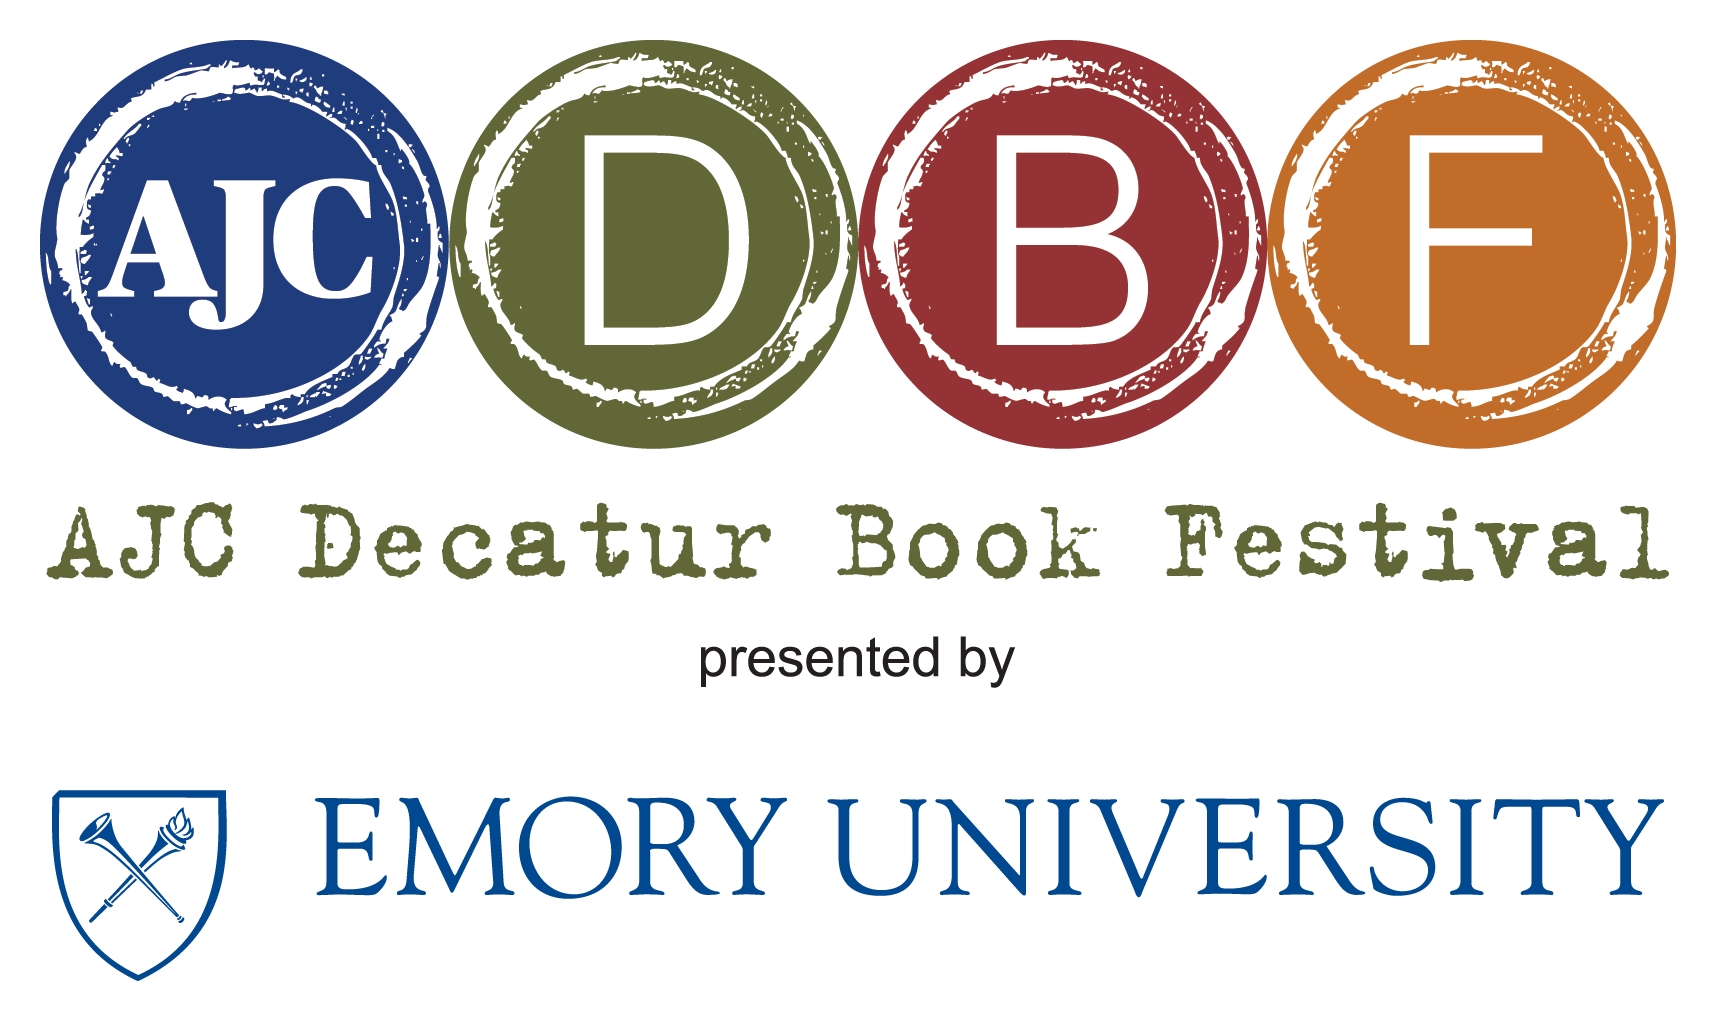 Decatur Book Festival